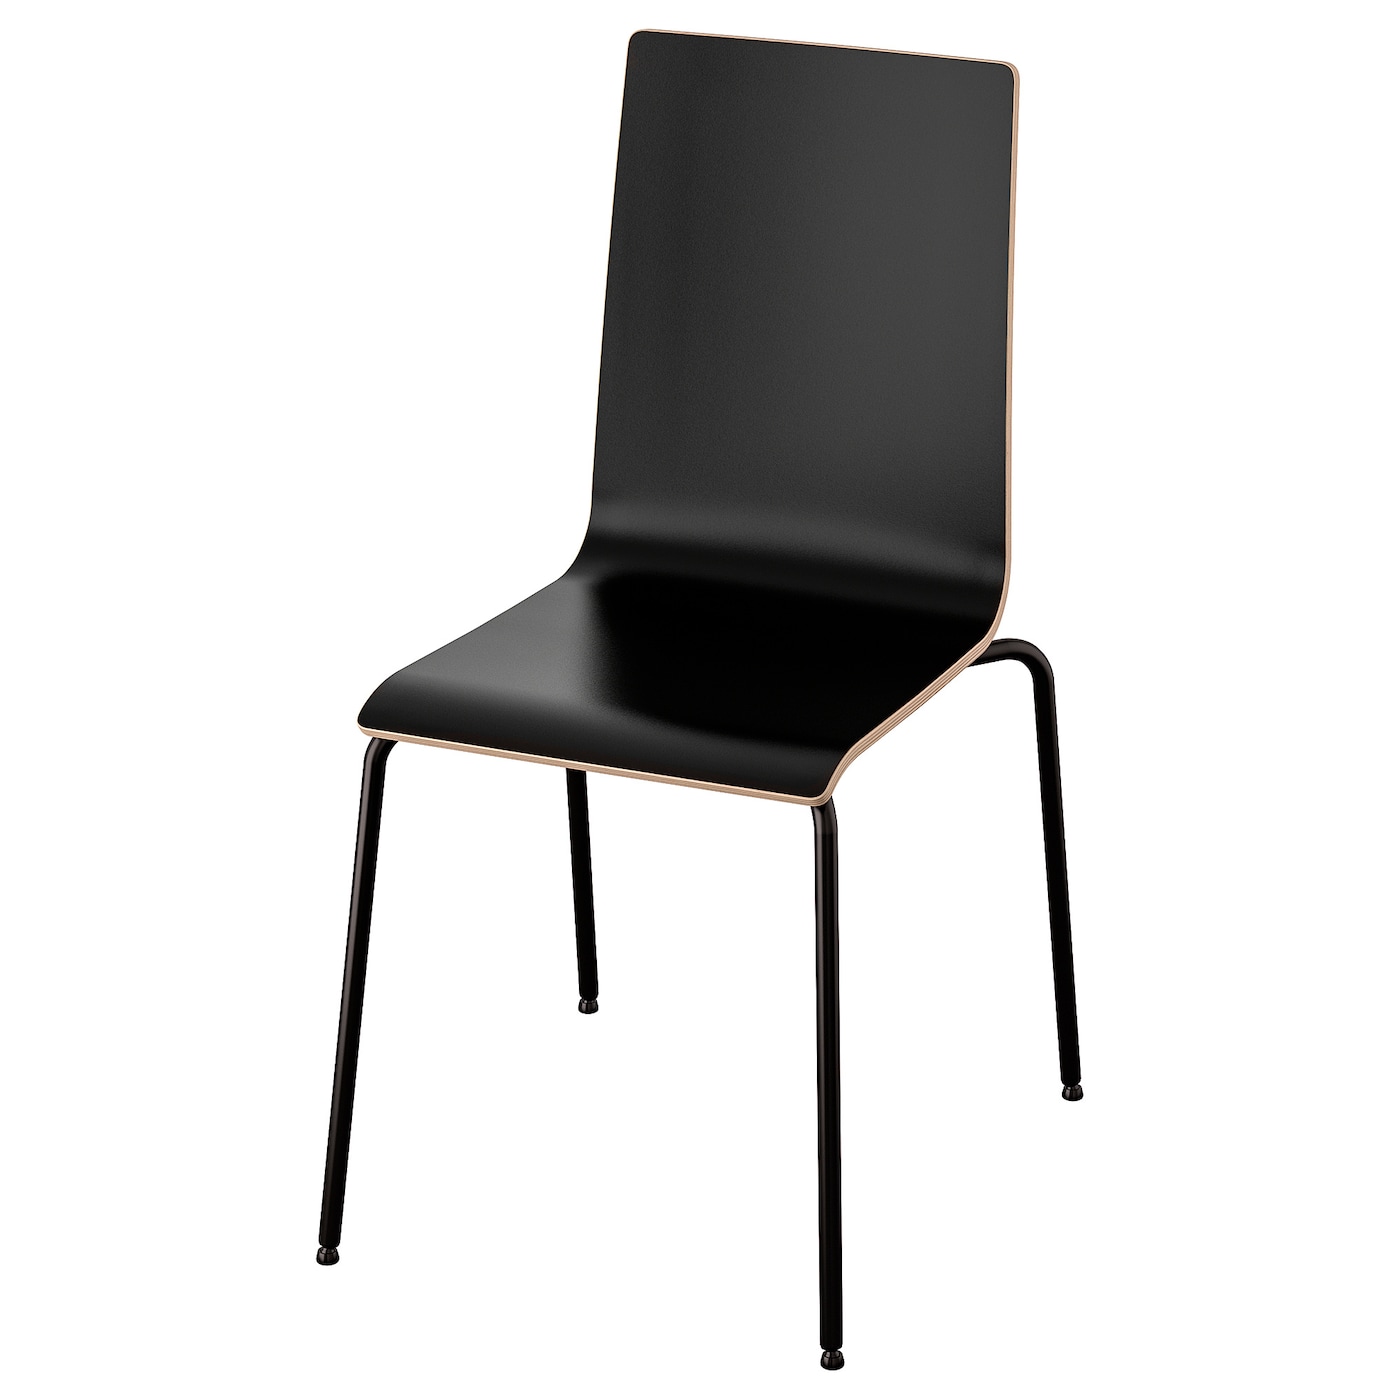 MARTIN Stuhl  - Esszimmerstühle - Möbel Ideen für dein Zuhause von Home Trends. Möbel Trends von Social Media Influencer für dein Skandi Zuhause.